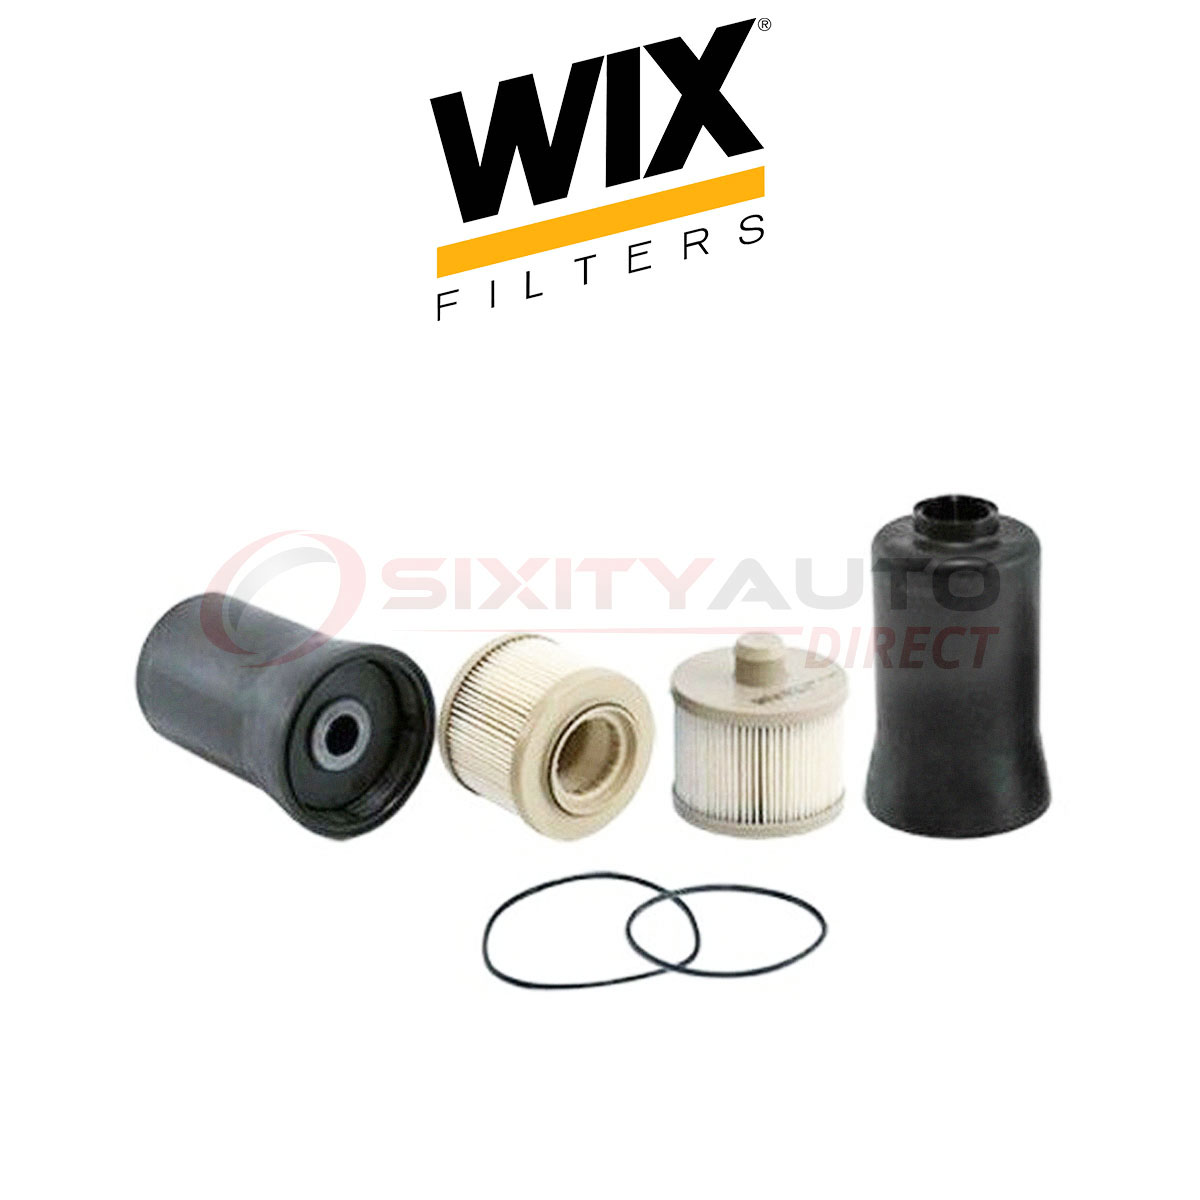 WIX Fuel Filter for 2006-2014 GMC Savana 2500 6.6L V8 - Gas Filtration Wix Fuel Filter For 6.6 Duramax